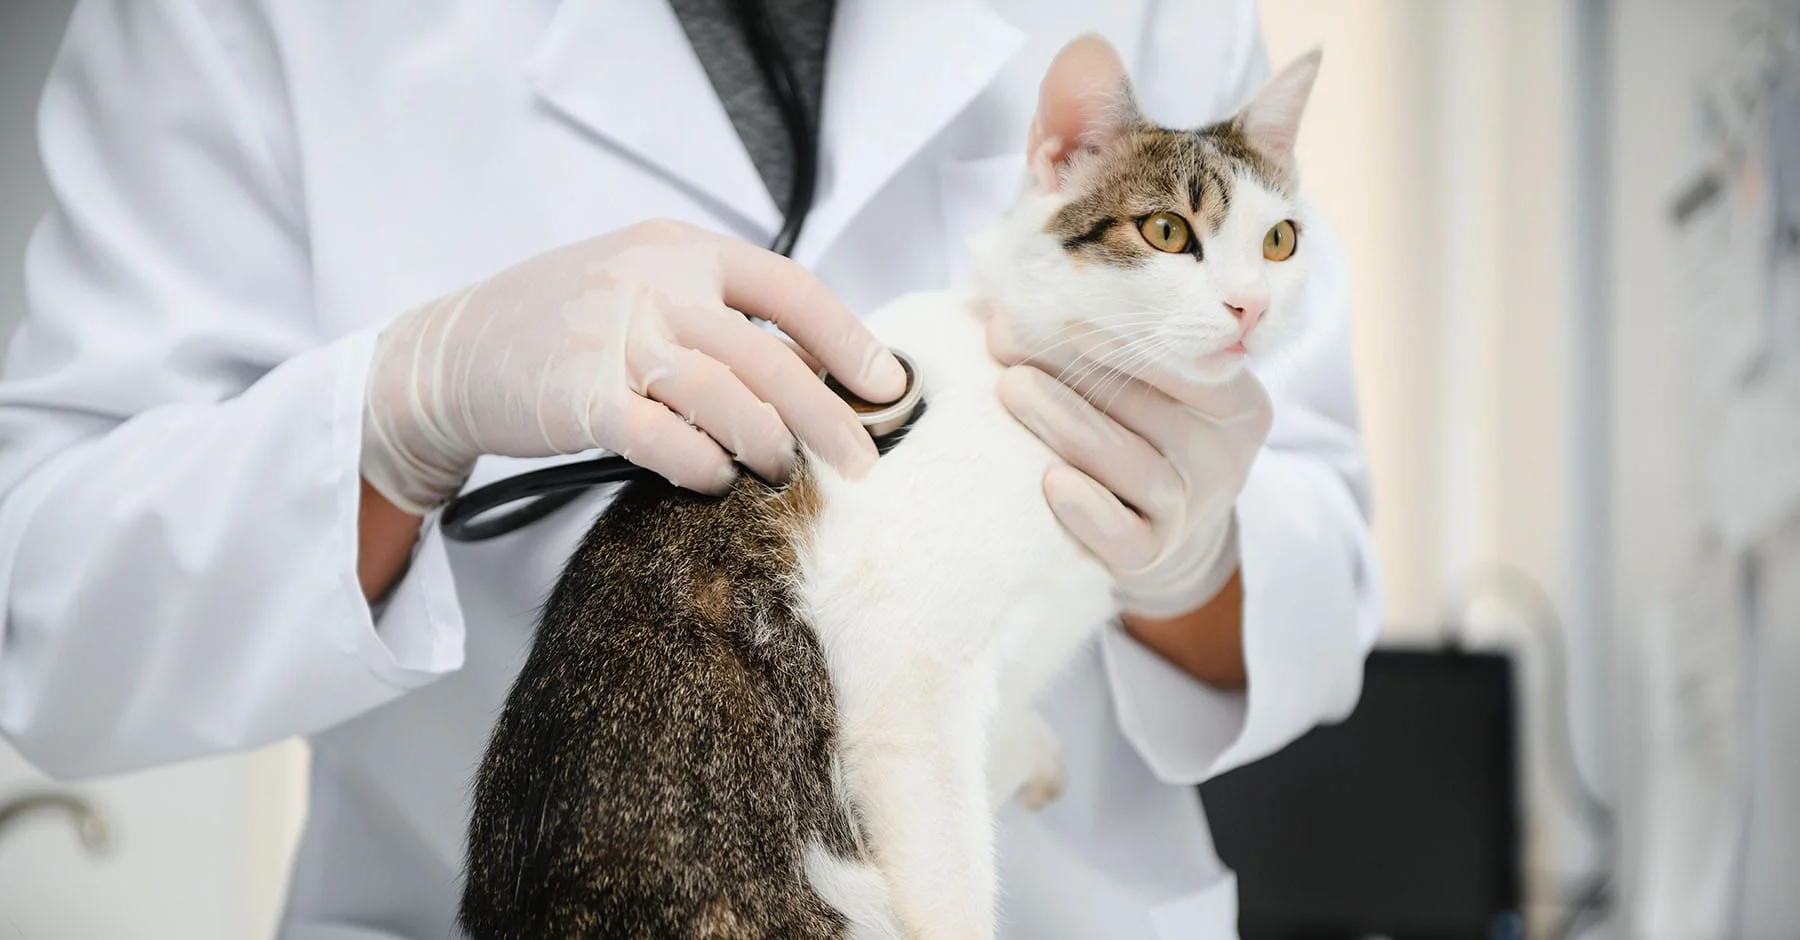 Проверьте состояние здоровья животного у ветеринарного врача